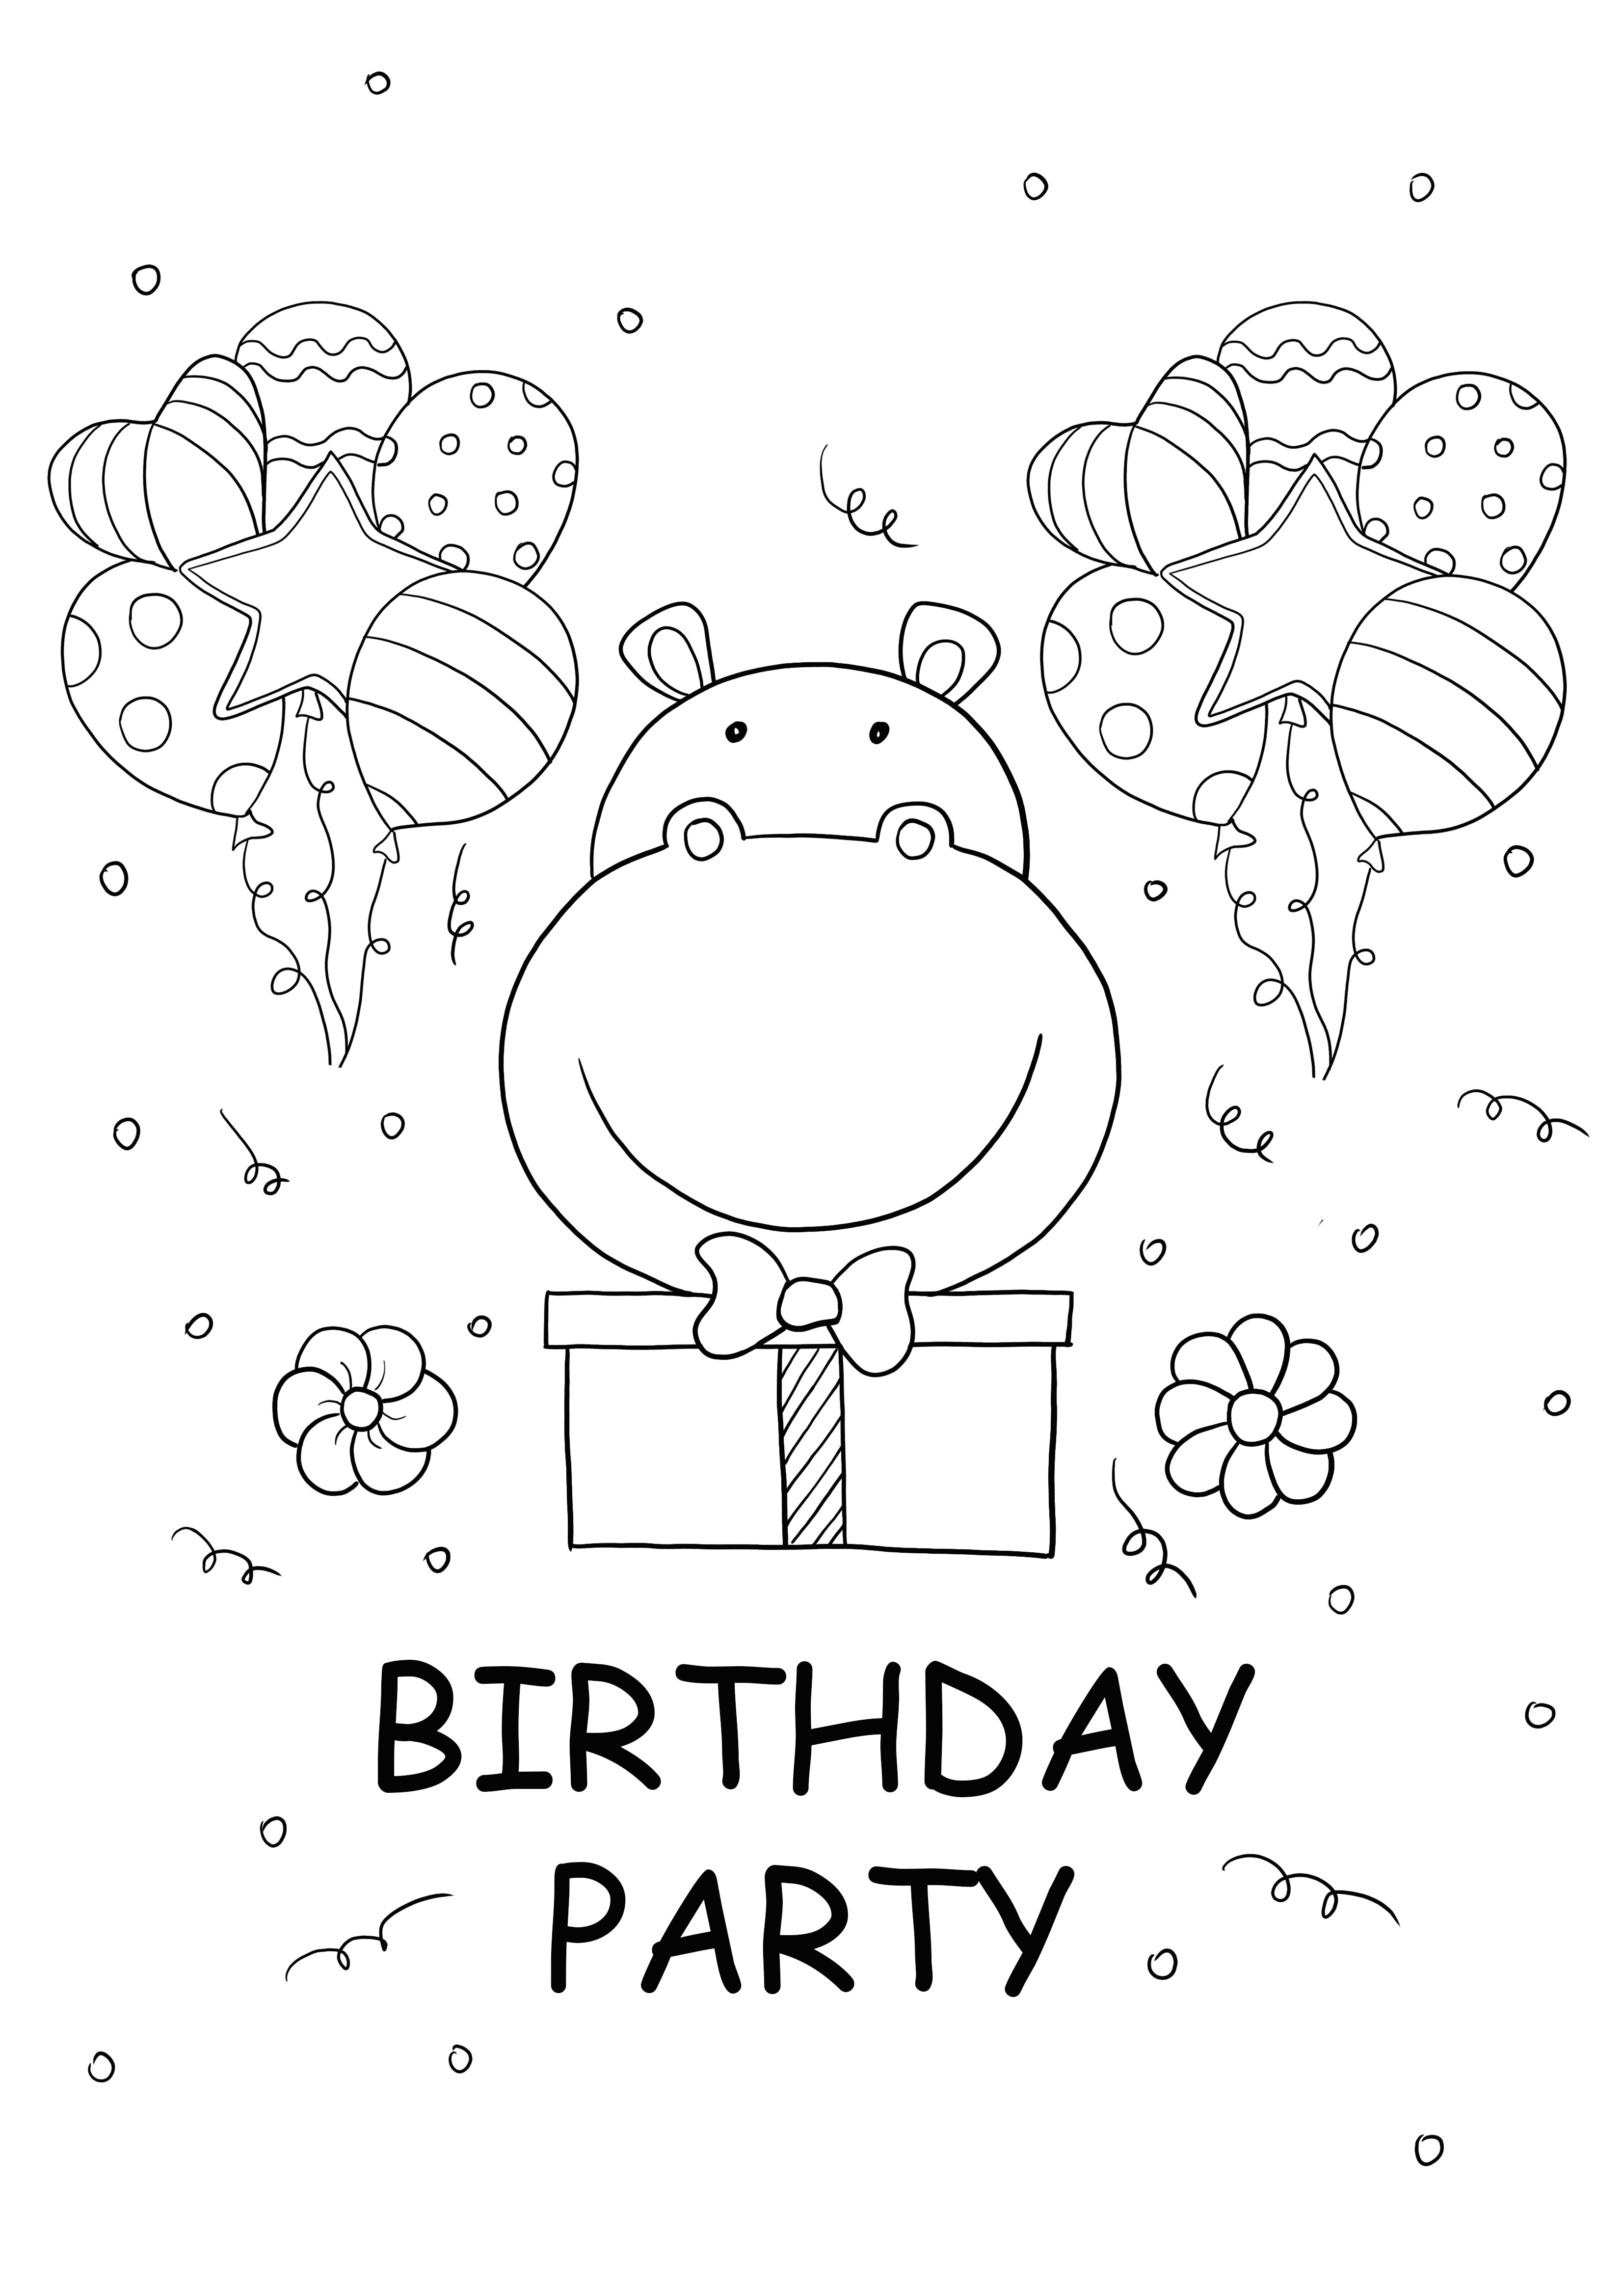 imagen de hipopótamo y fiesta de cumpleaños para imprimir gratis